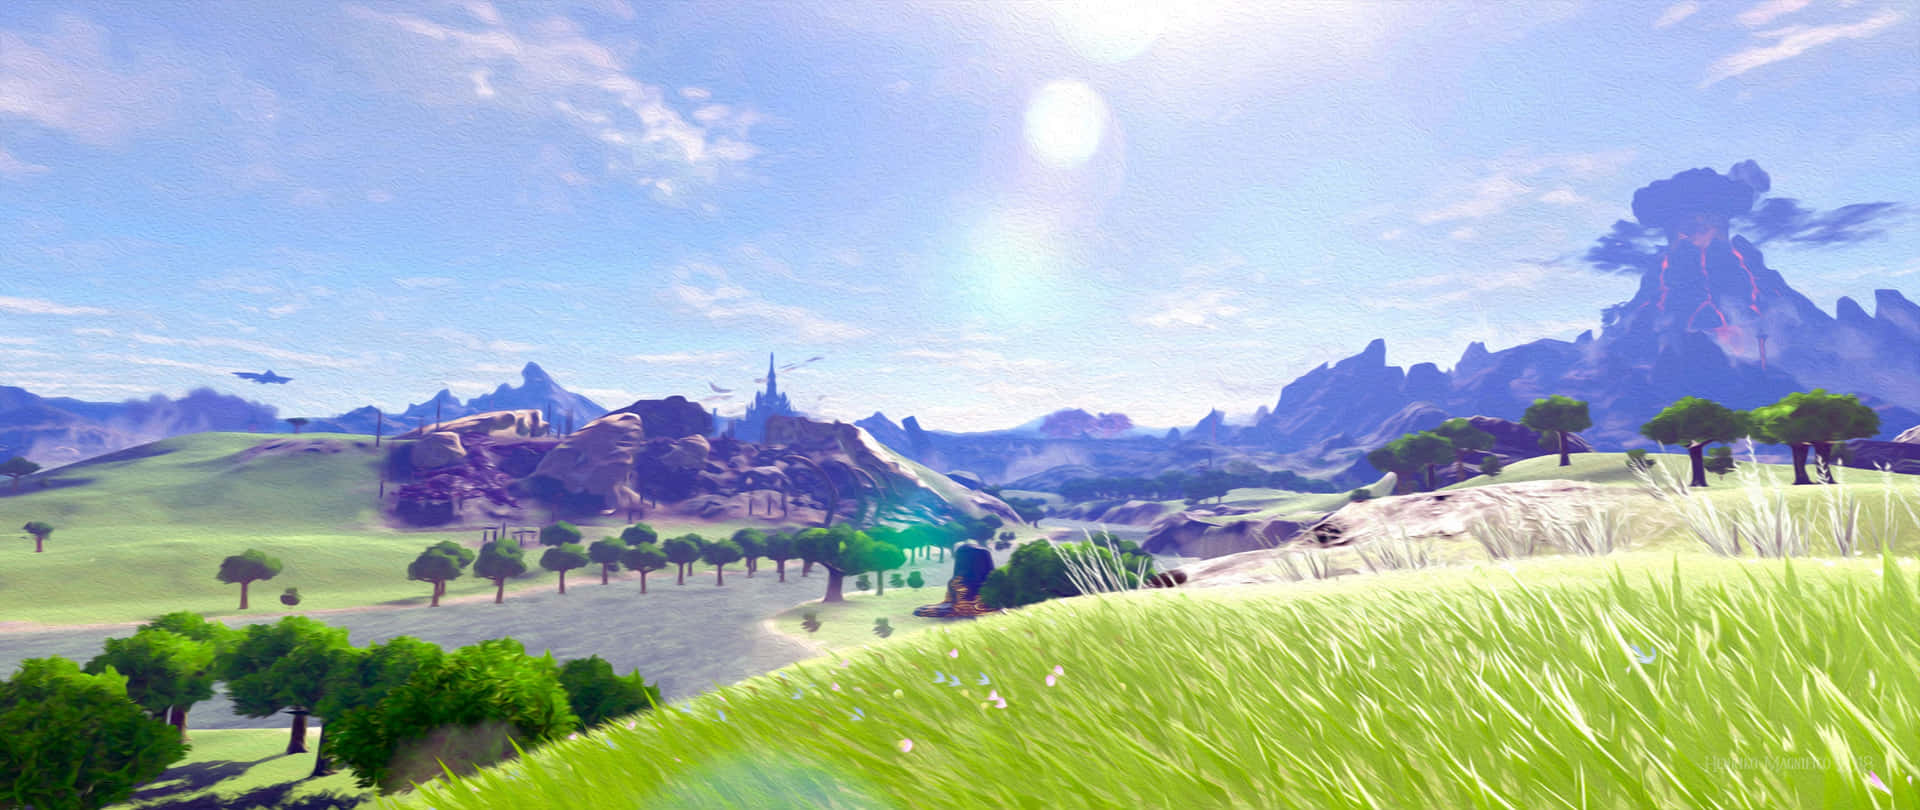 Utforskaen Värld Full Av Äventyr Med Zelda Breath Of The Wild 4k Som Bakgrundsbild Till Din Dator Eller Mobil! Wallpaper